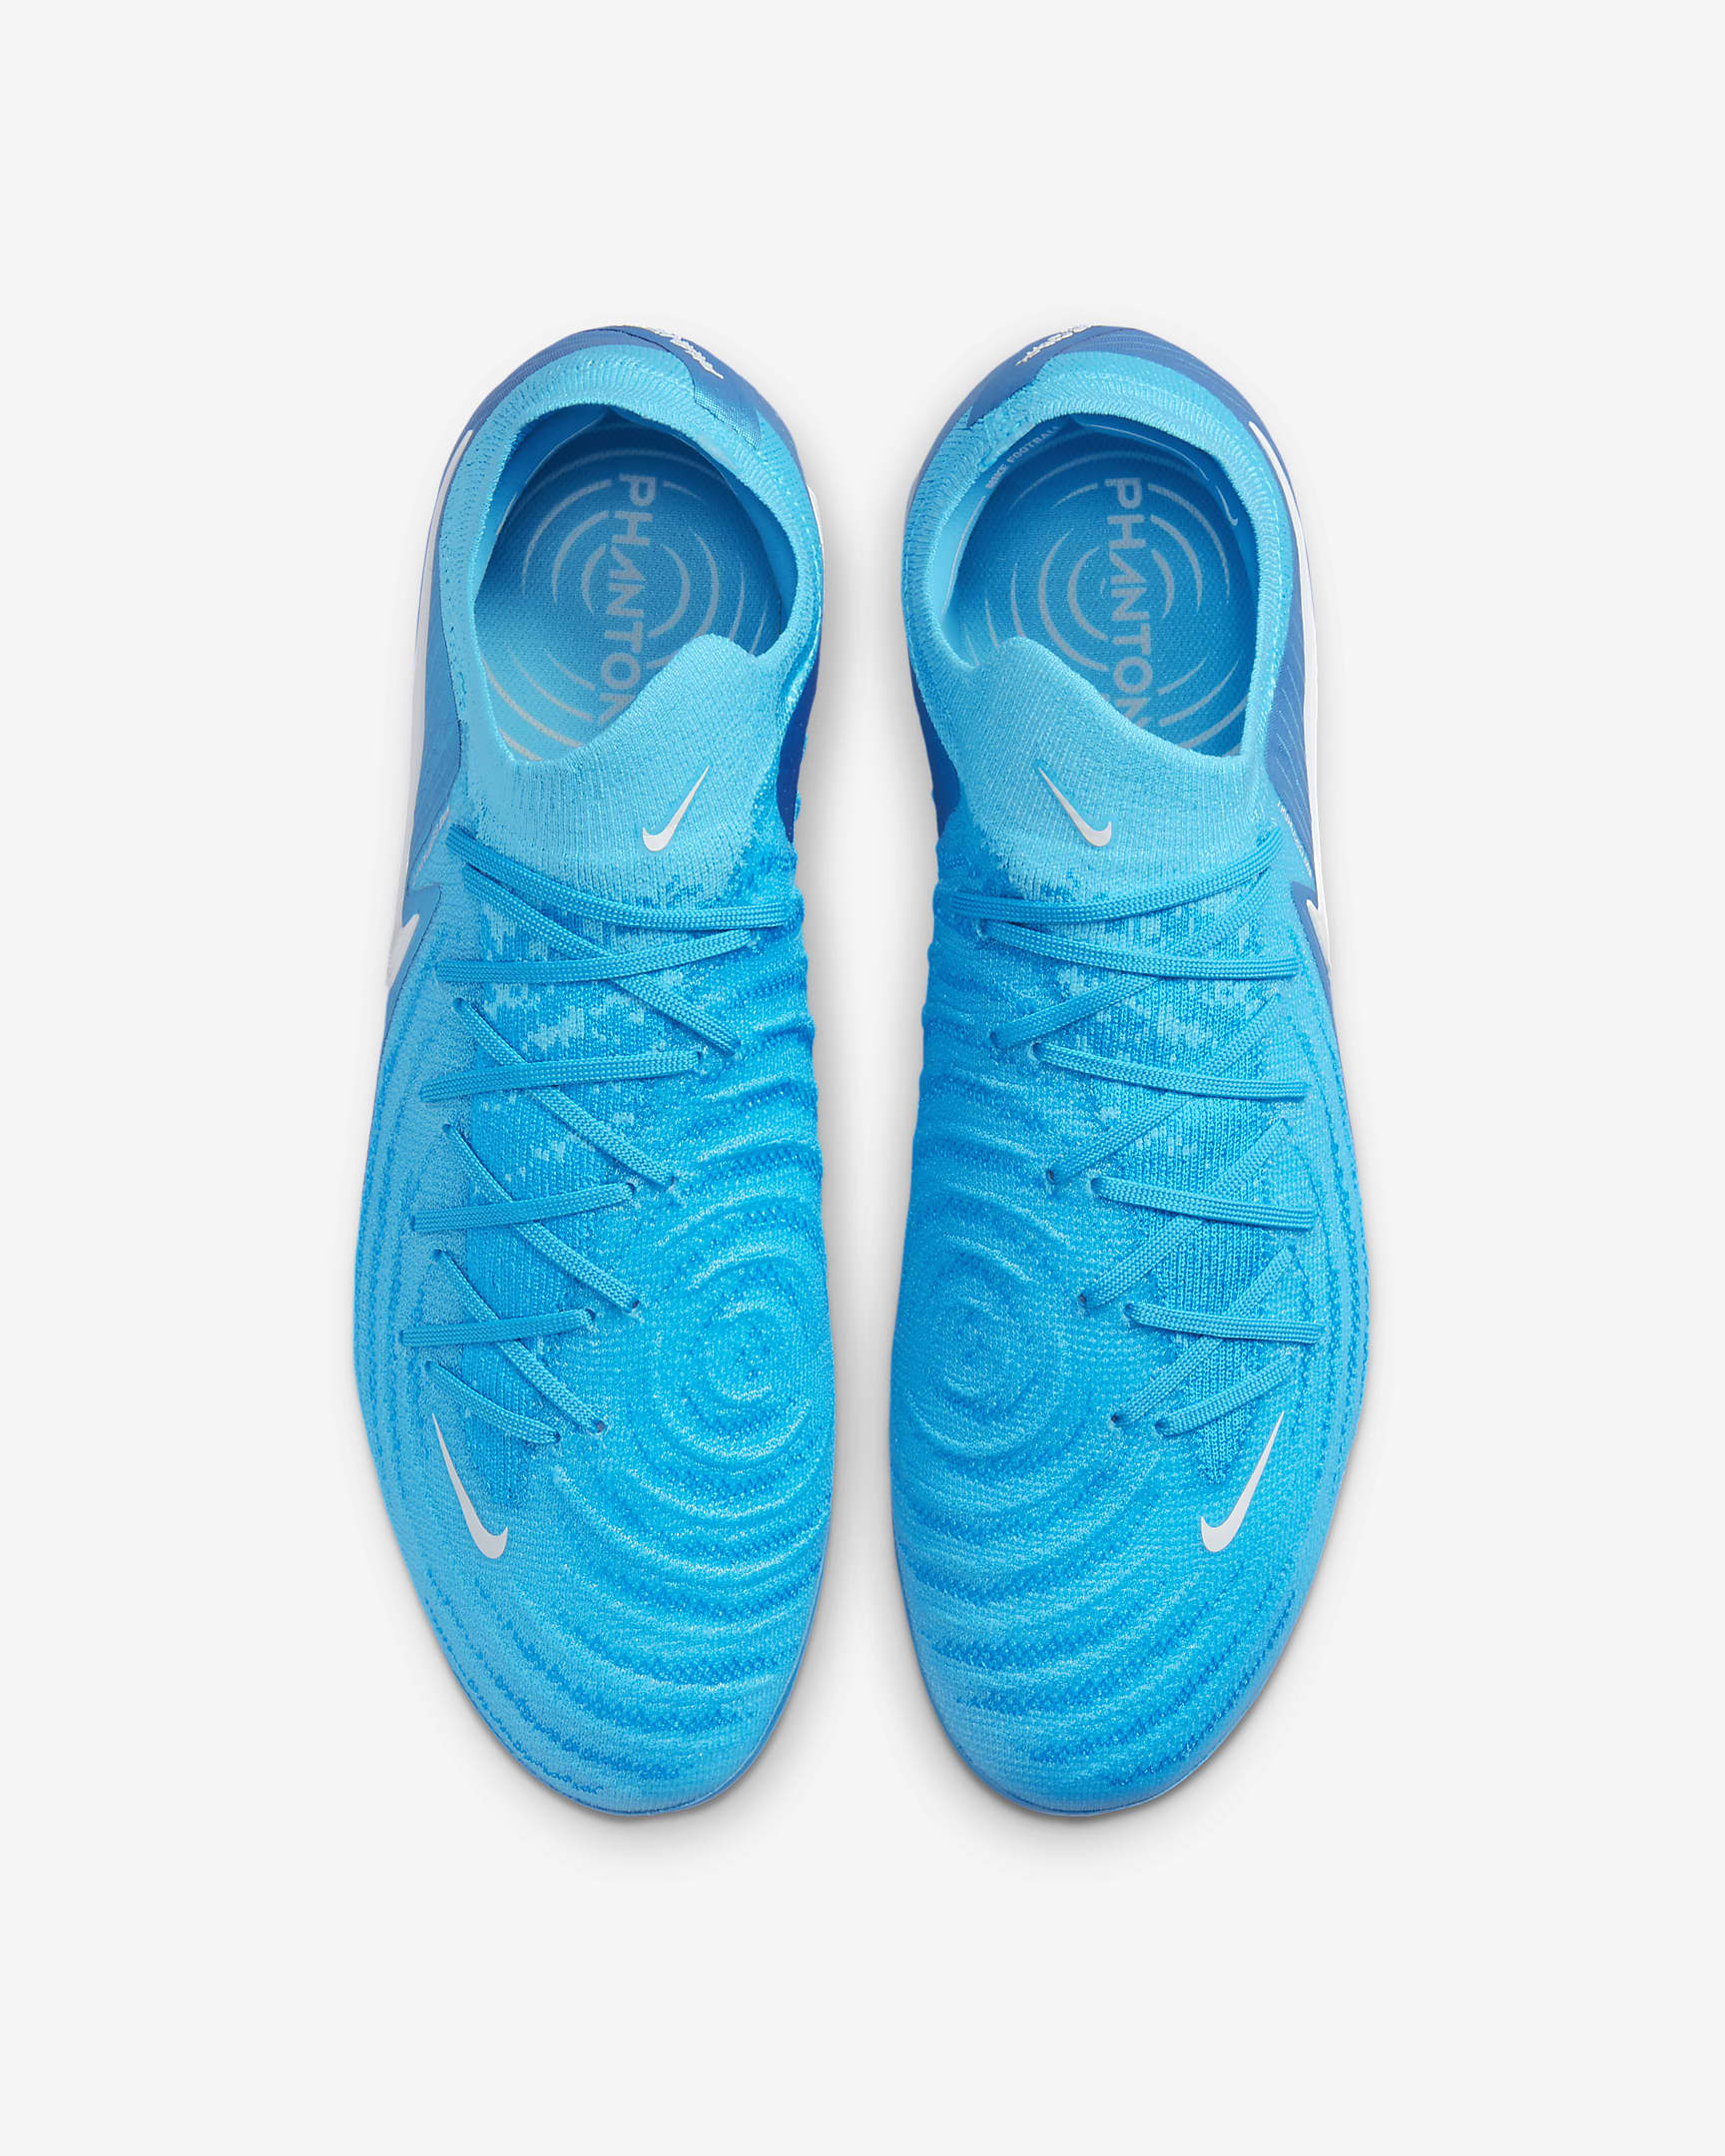 Nike Phantom GX 2 Elite FG Low-Top Football Boot - Blue Fury/White